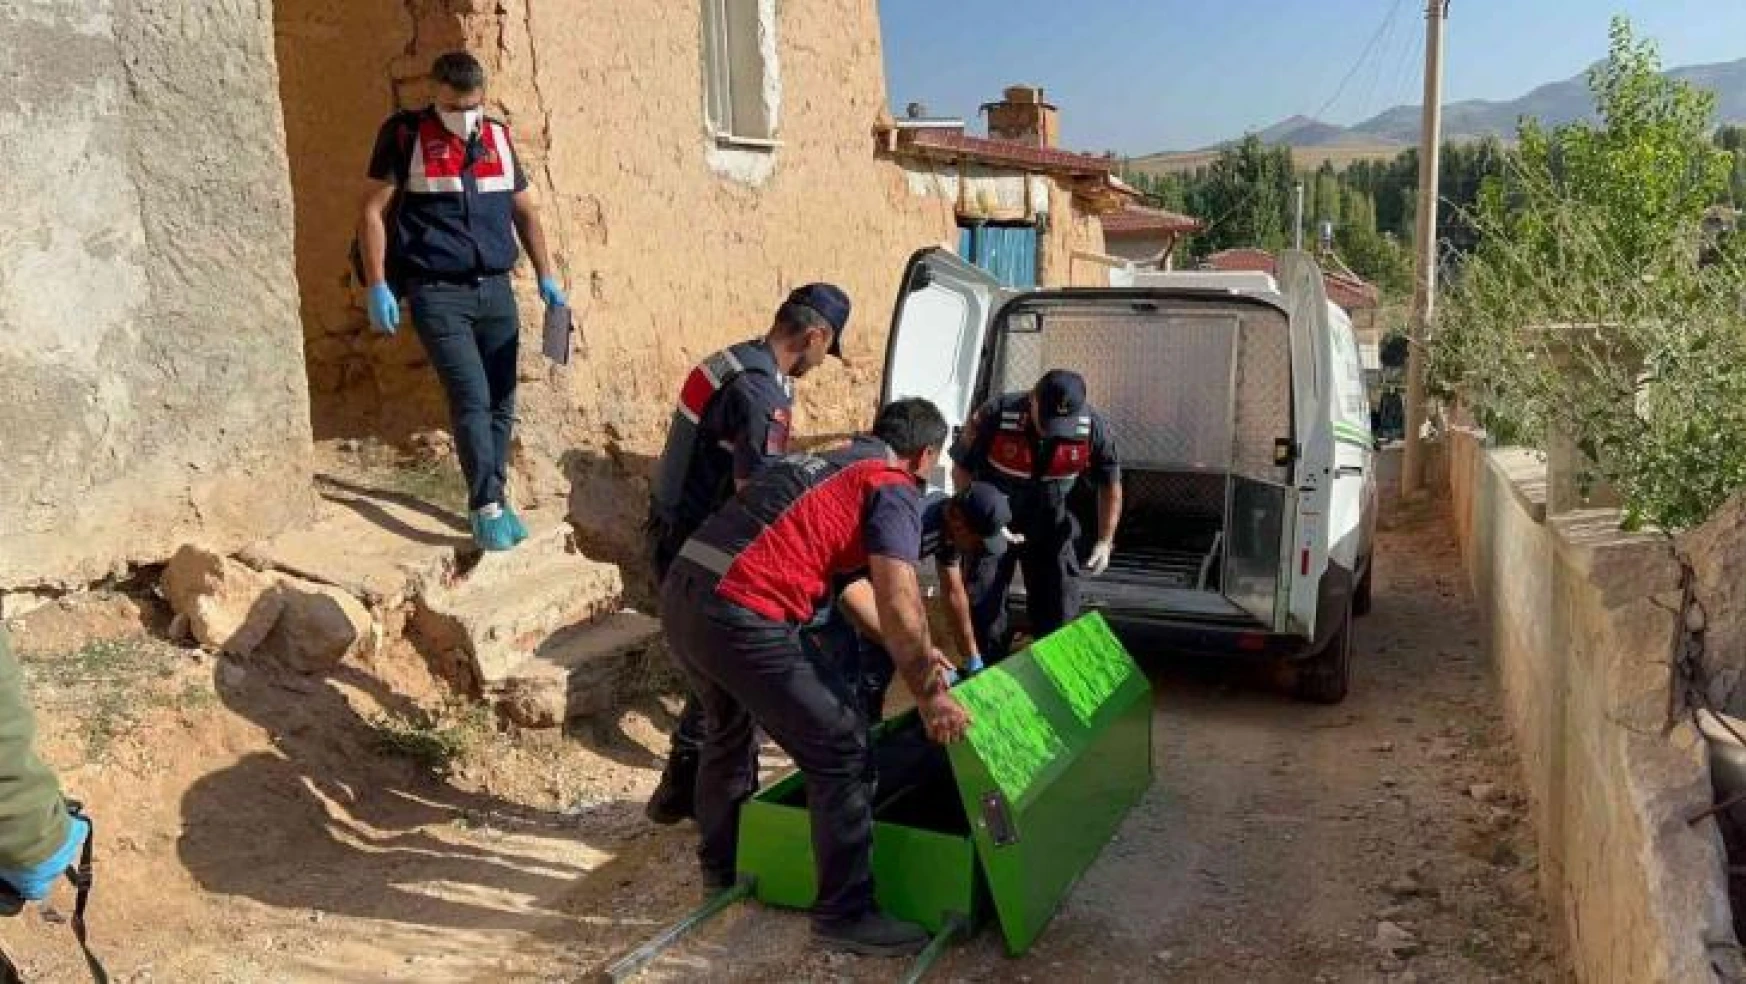 Afyonkarahisar'da şüpheli ölüm: Eve giren ekipler şahsın cansız bedeniyle karşılaştı